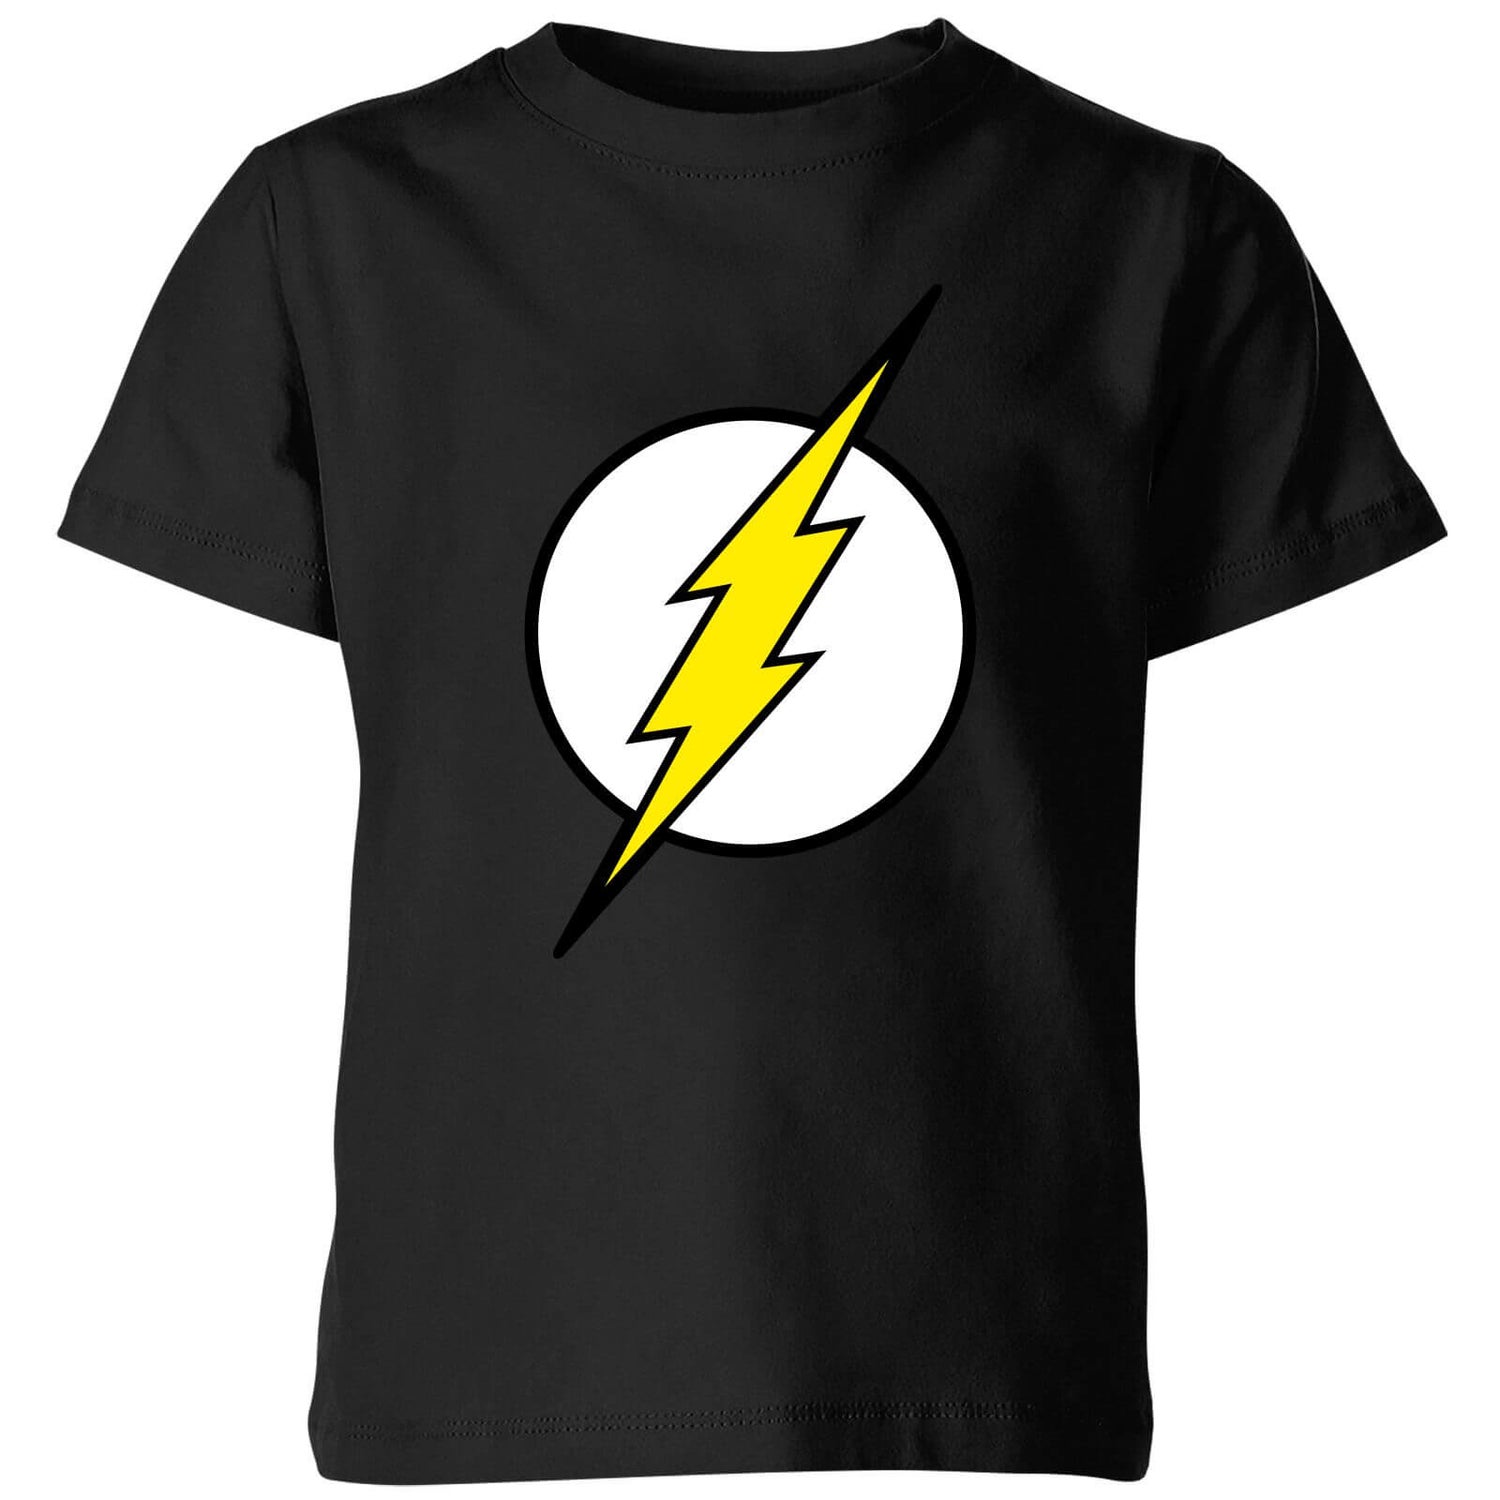 Justice League Flash Logo Kids' T-Shirt - Black